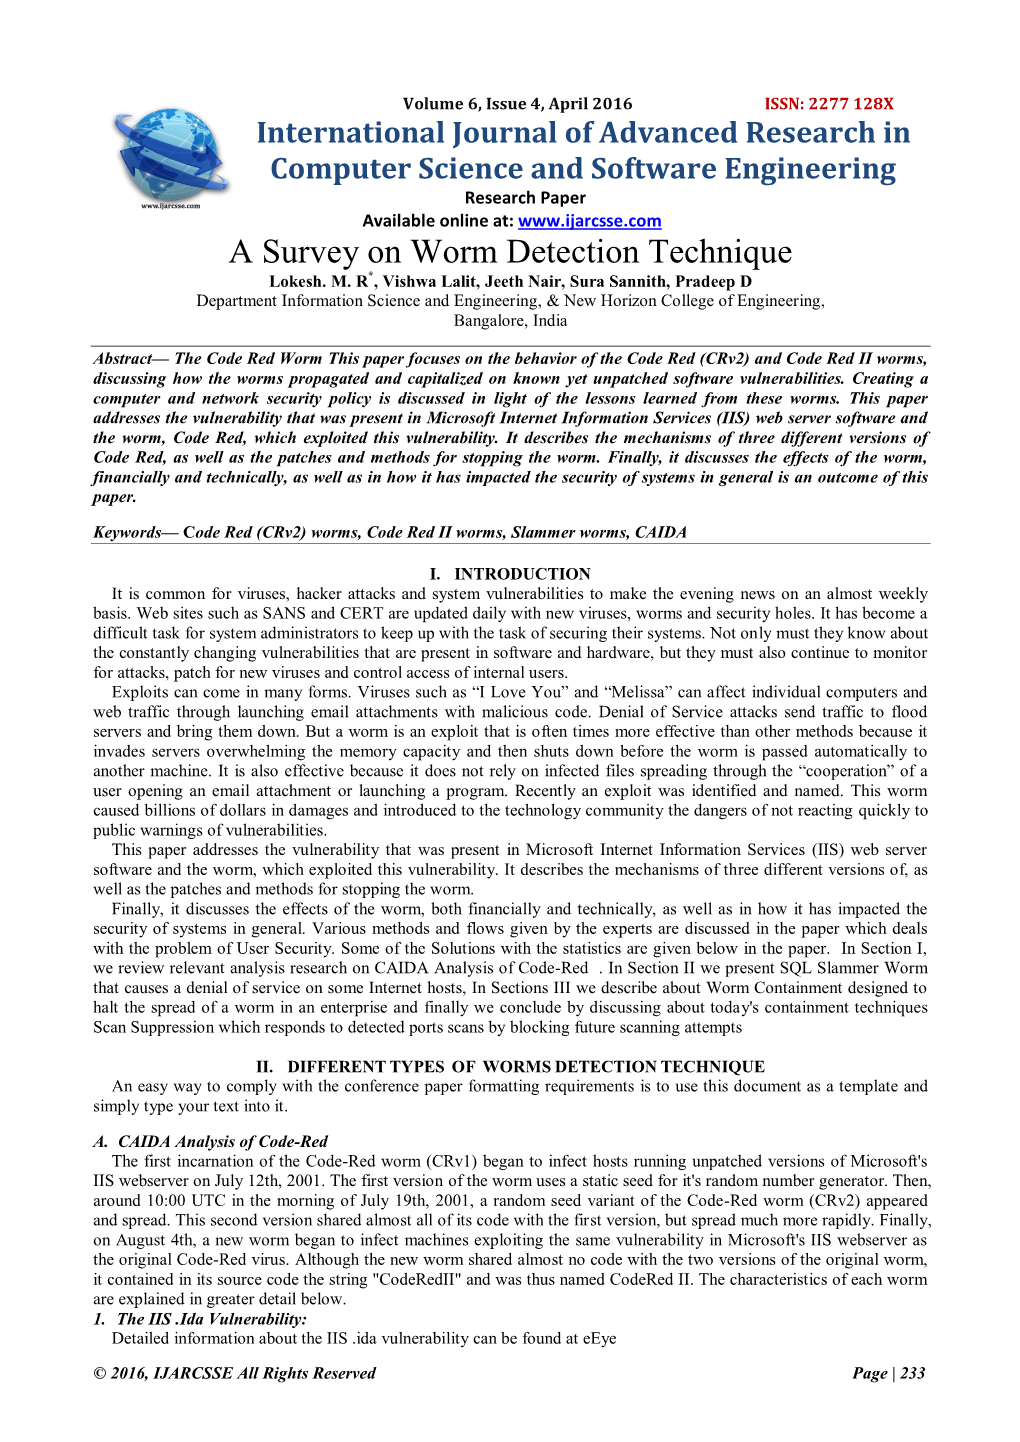 A Survey on Worm Detection Technique Lokesh